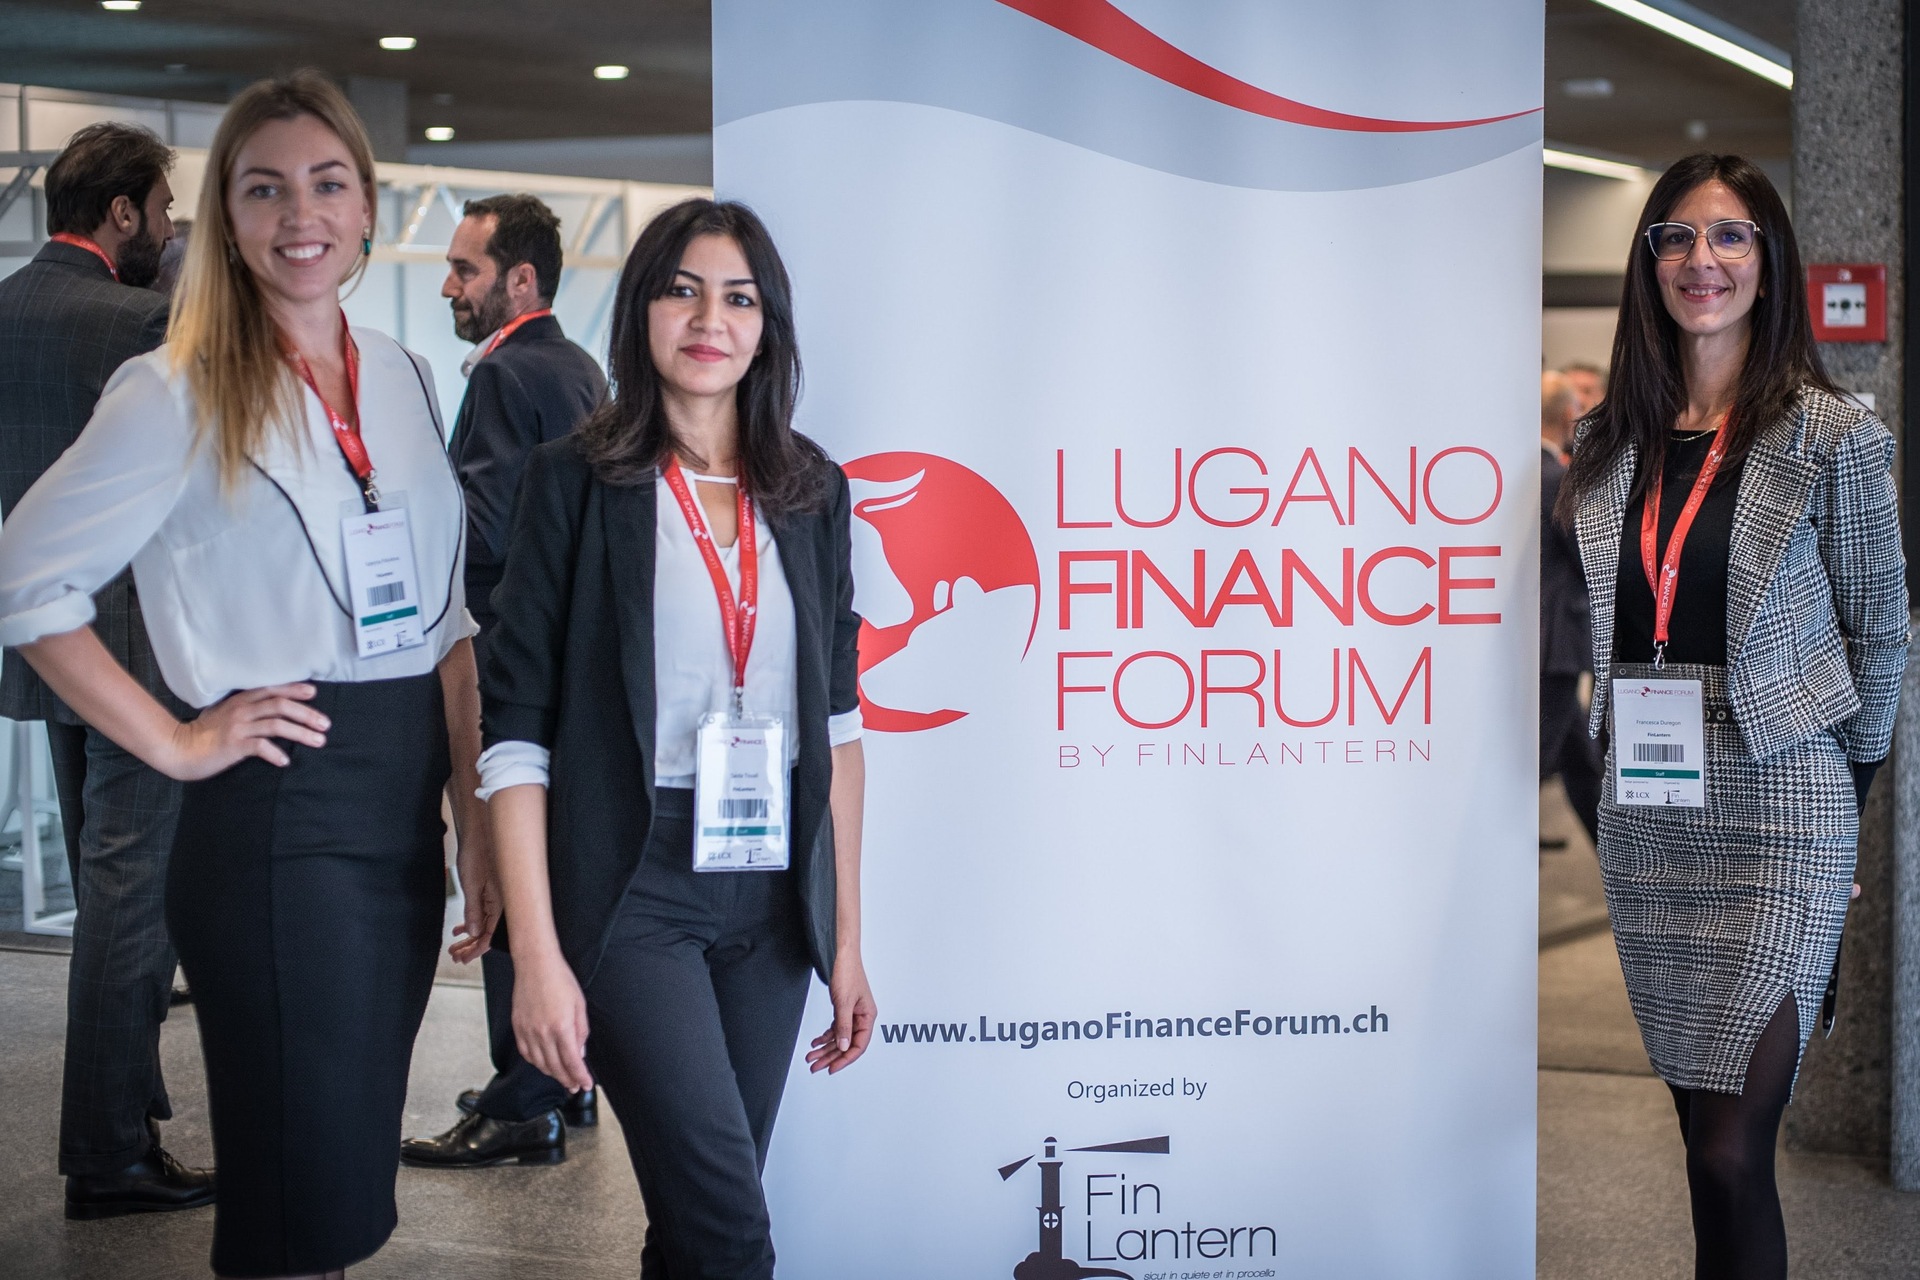 Lugano Finance Forum: sýningarsvæði 2022 útgáfunnar af "Lugano Finance Forum"